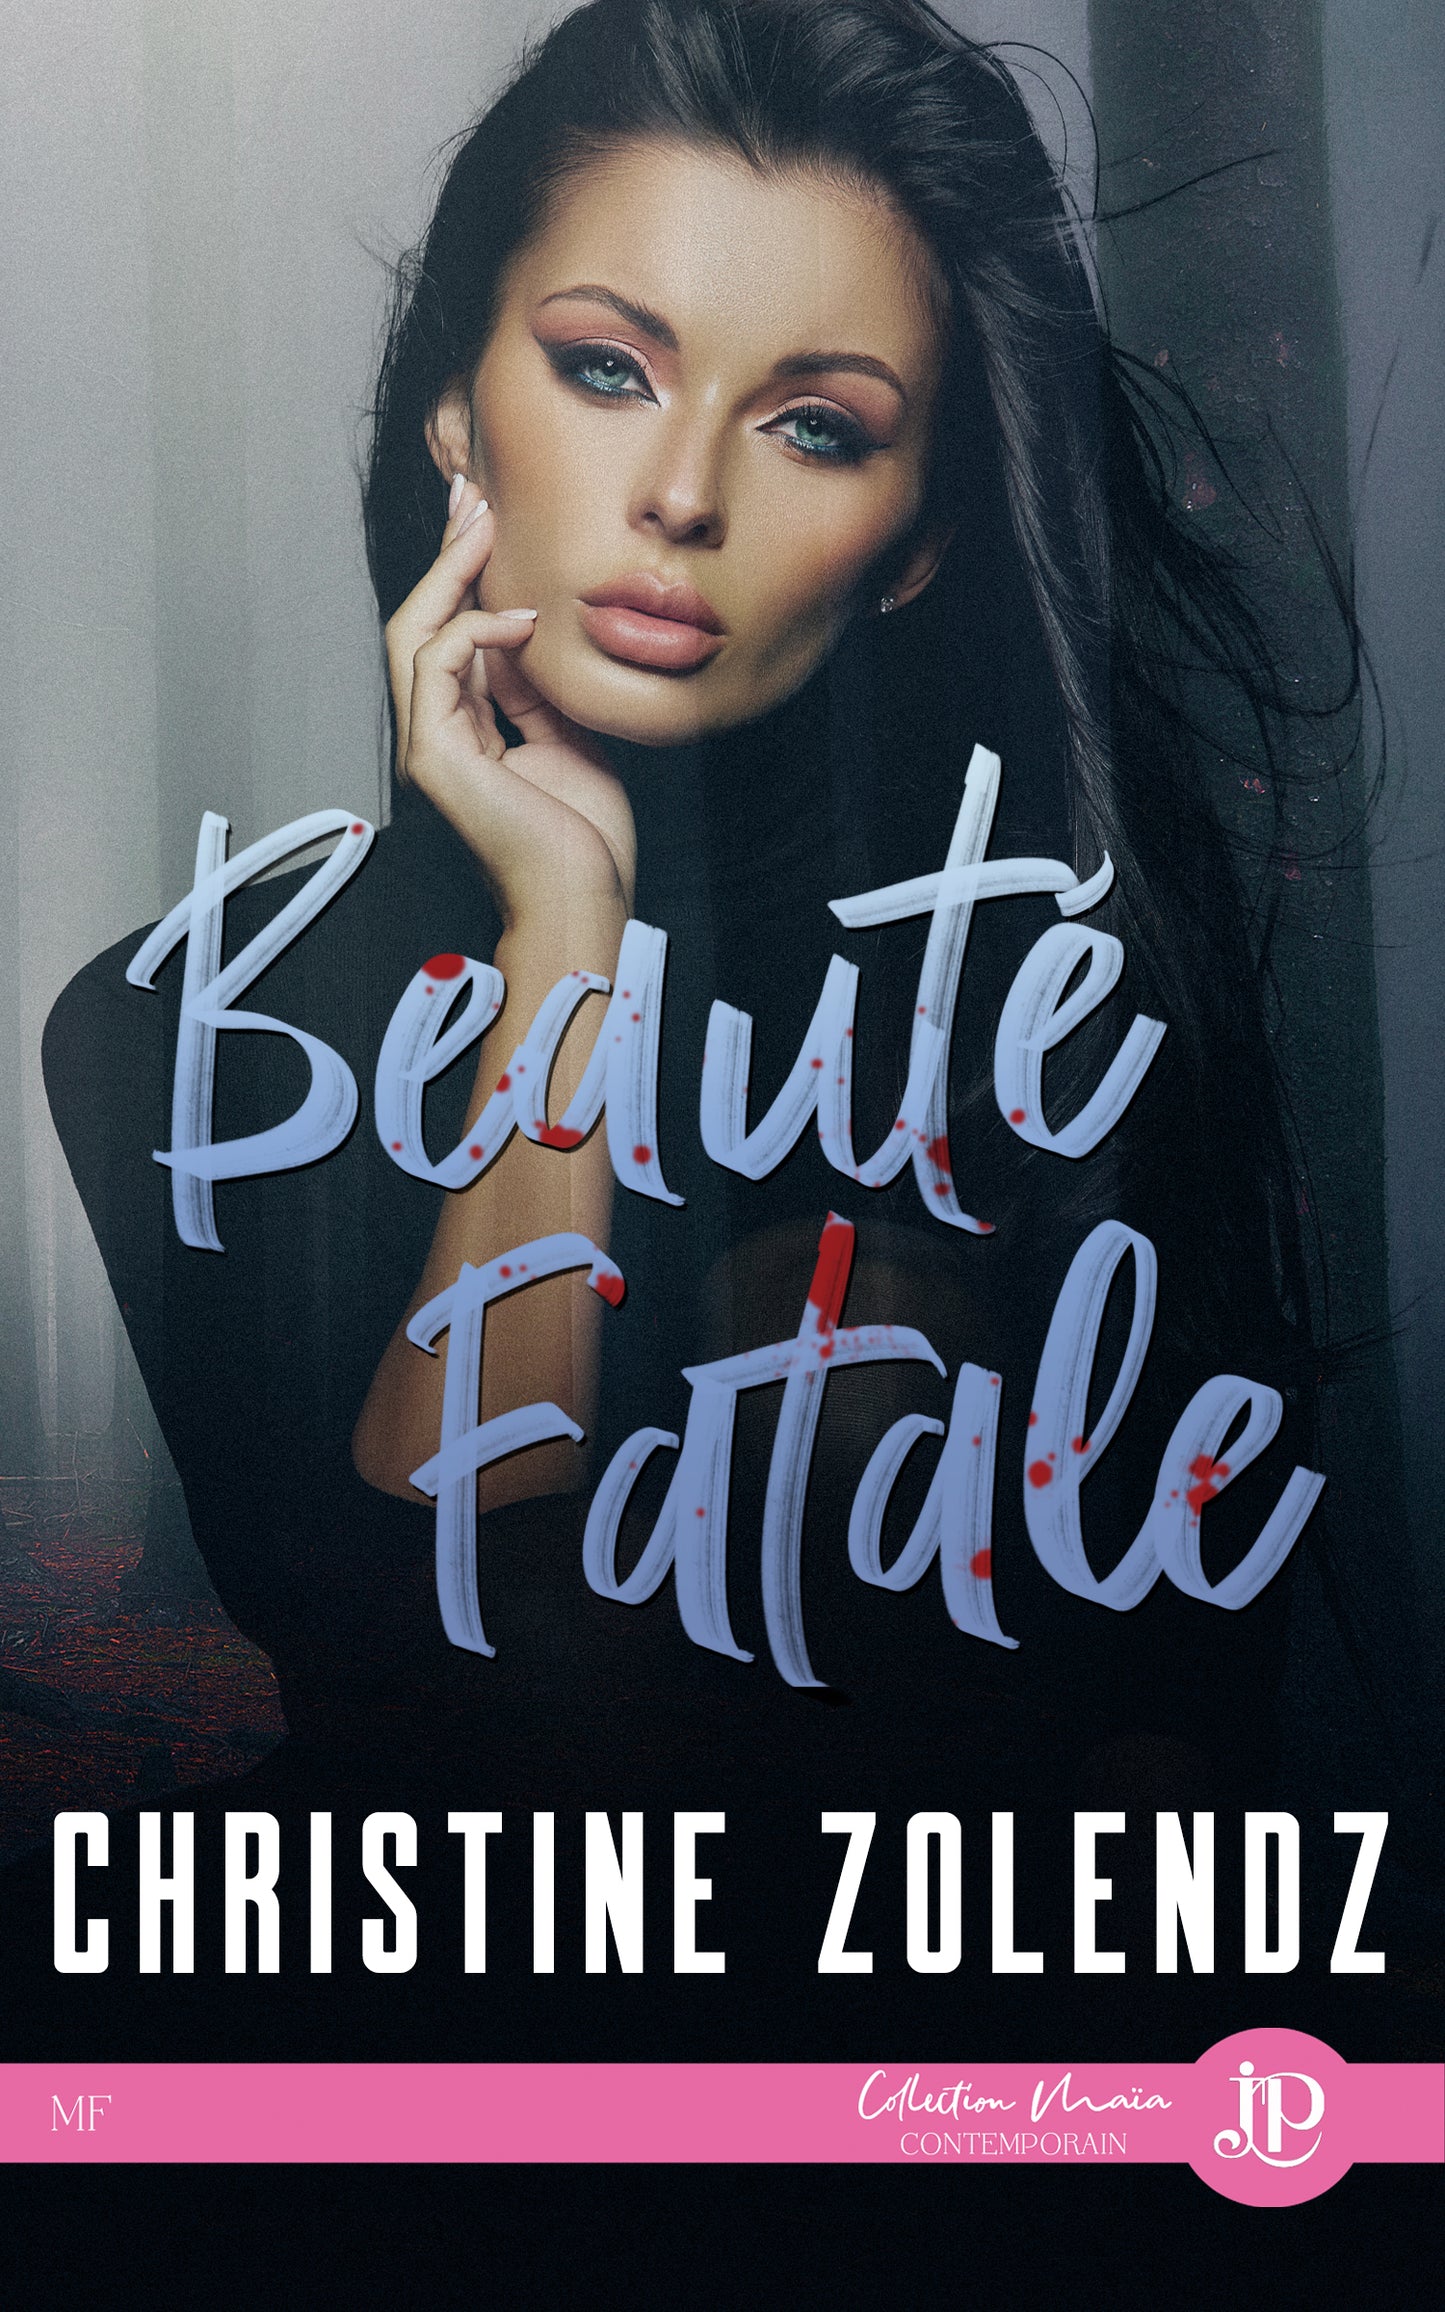 Beautiful #2 : Beauté fatale